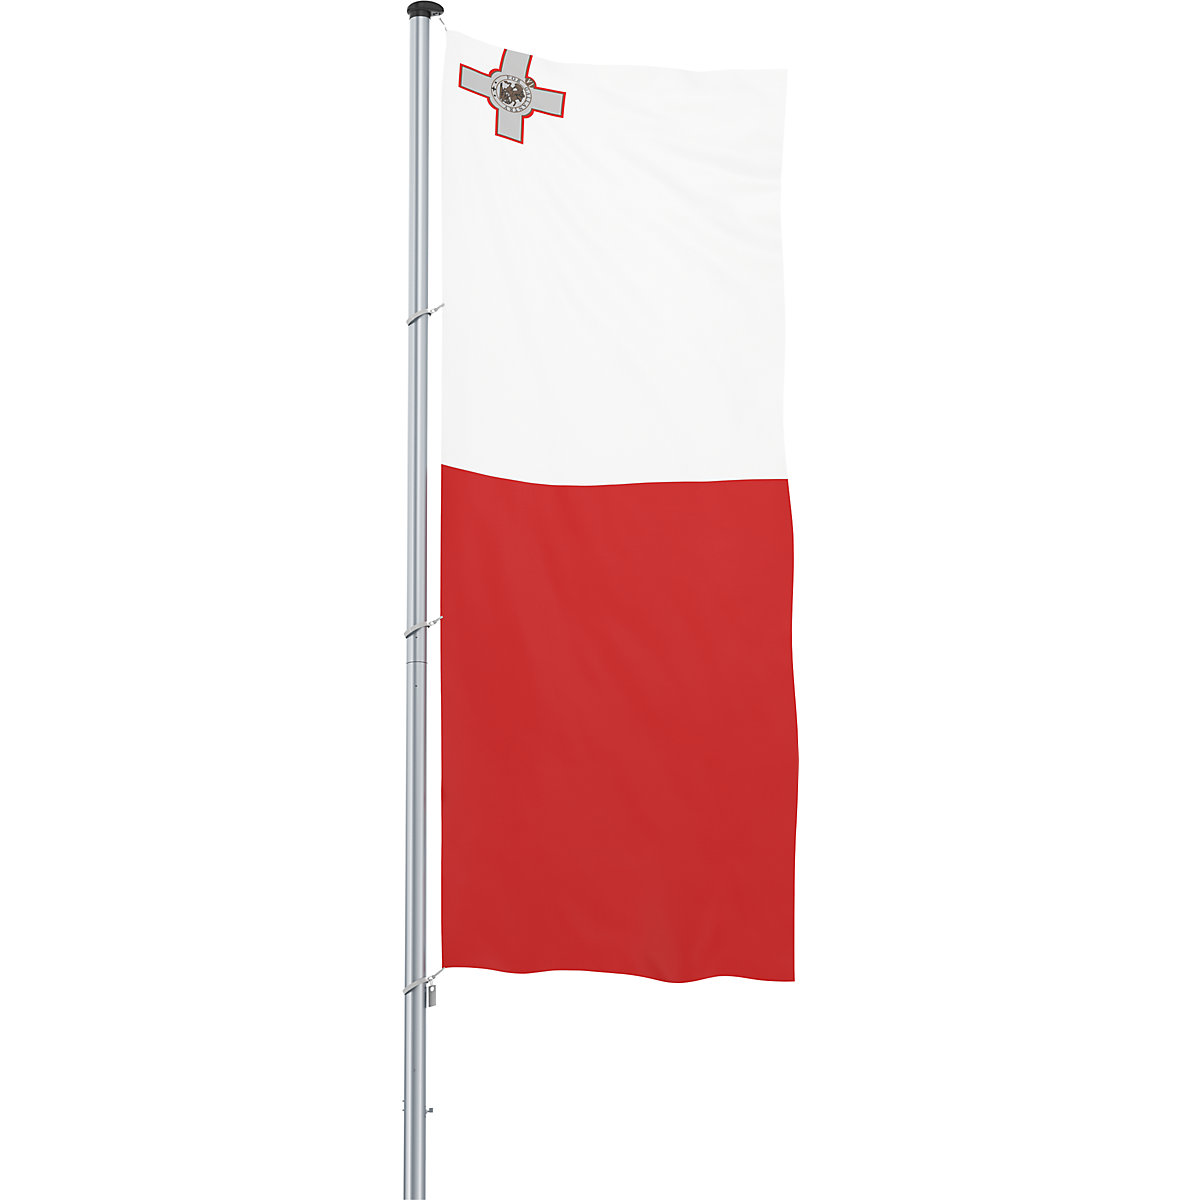 Vlajka pro vodorovné zavěšení/vlajka země – Mannus, formát 1,2 x 3 m, Malta-30